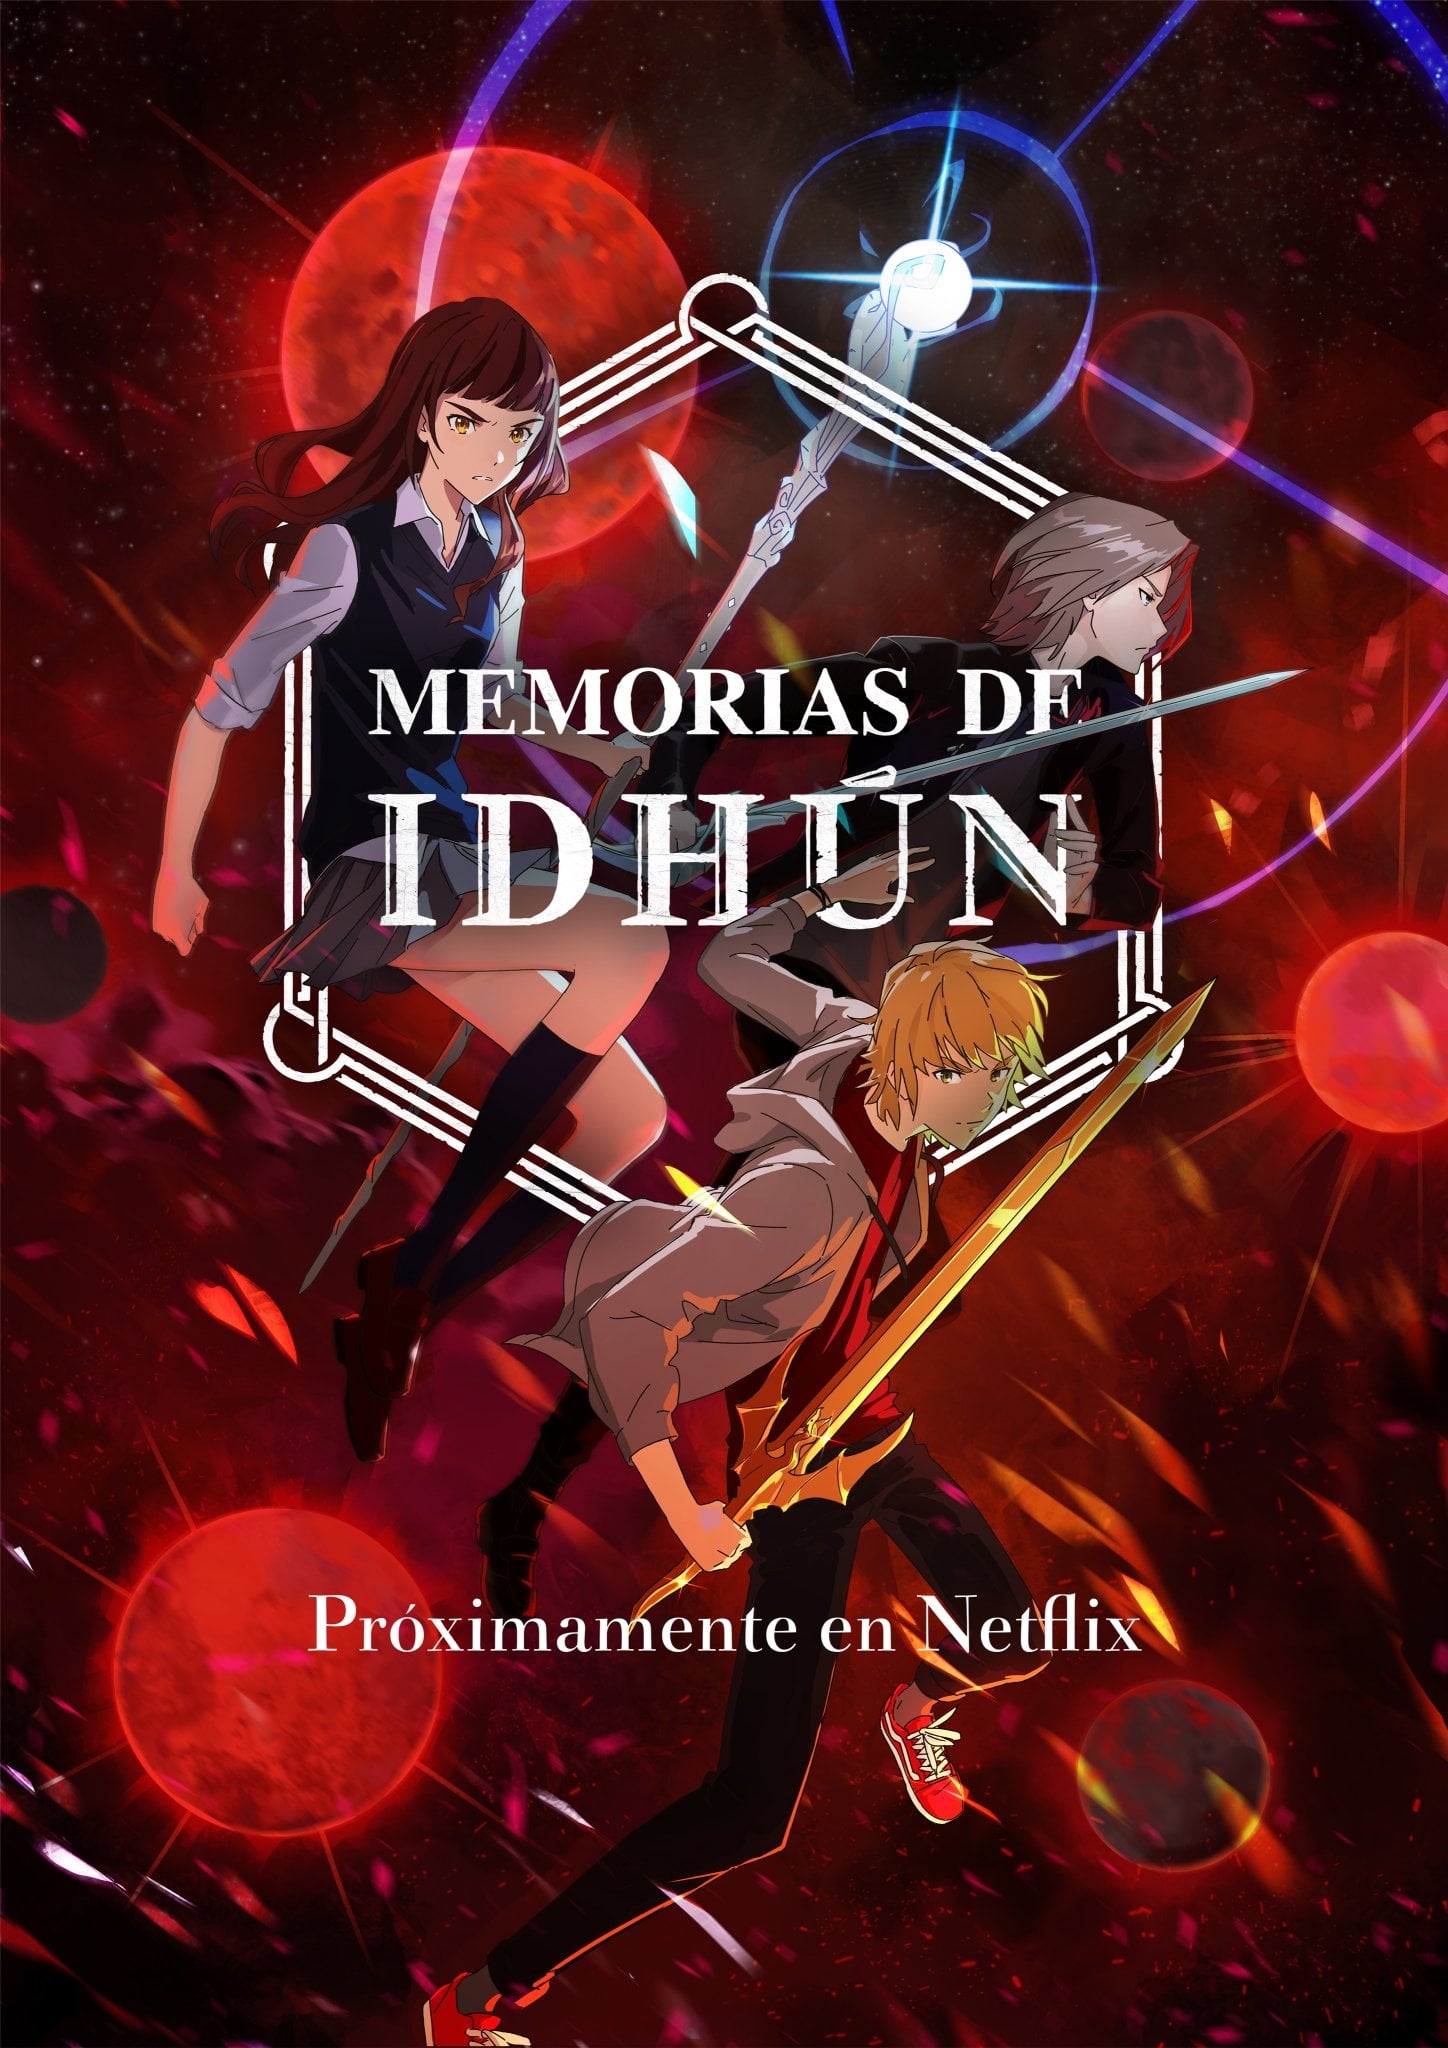 Memorias de Idhún TV Shows About Battle